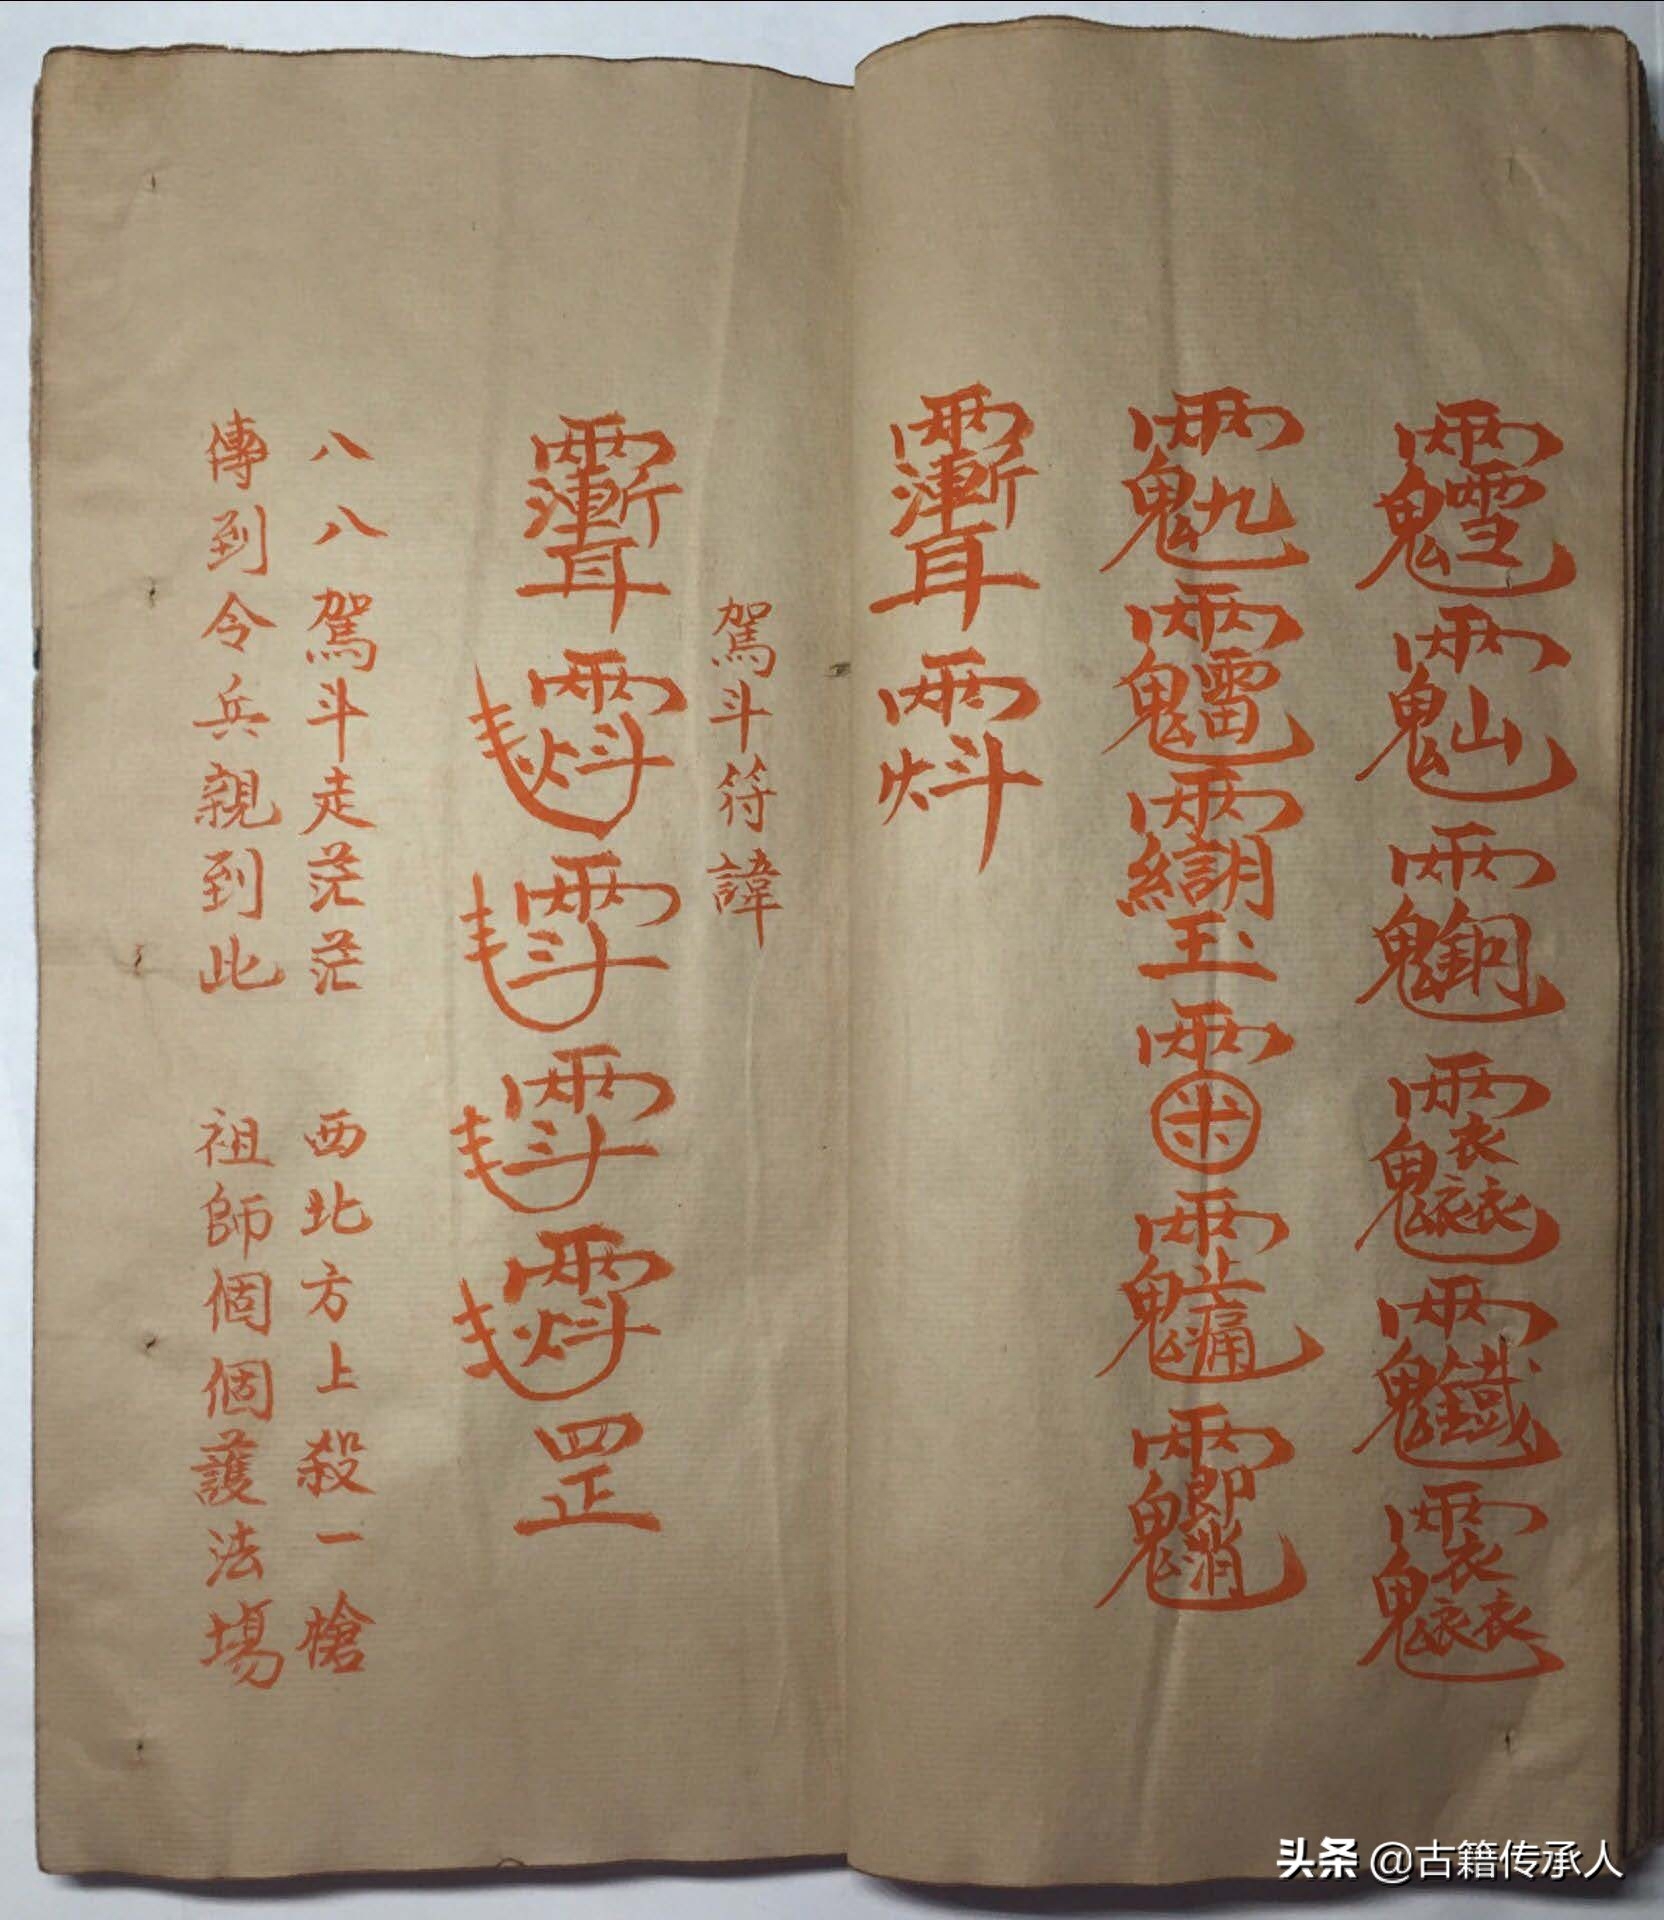 符咒类古籍 道家神符霛咒秘传41页 朱砂书写 非常罕见难得